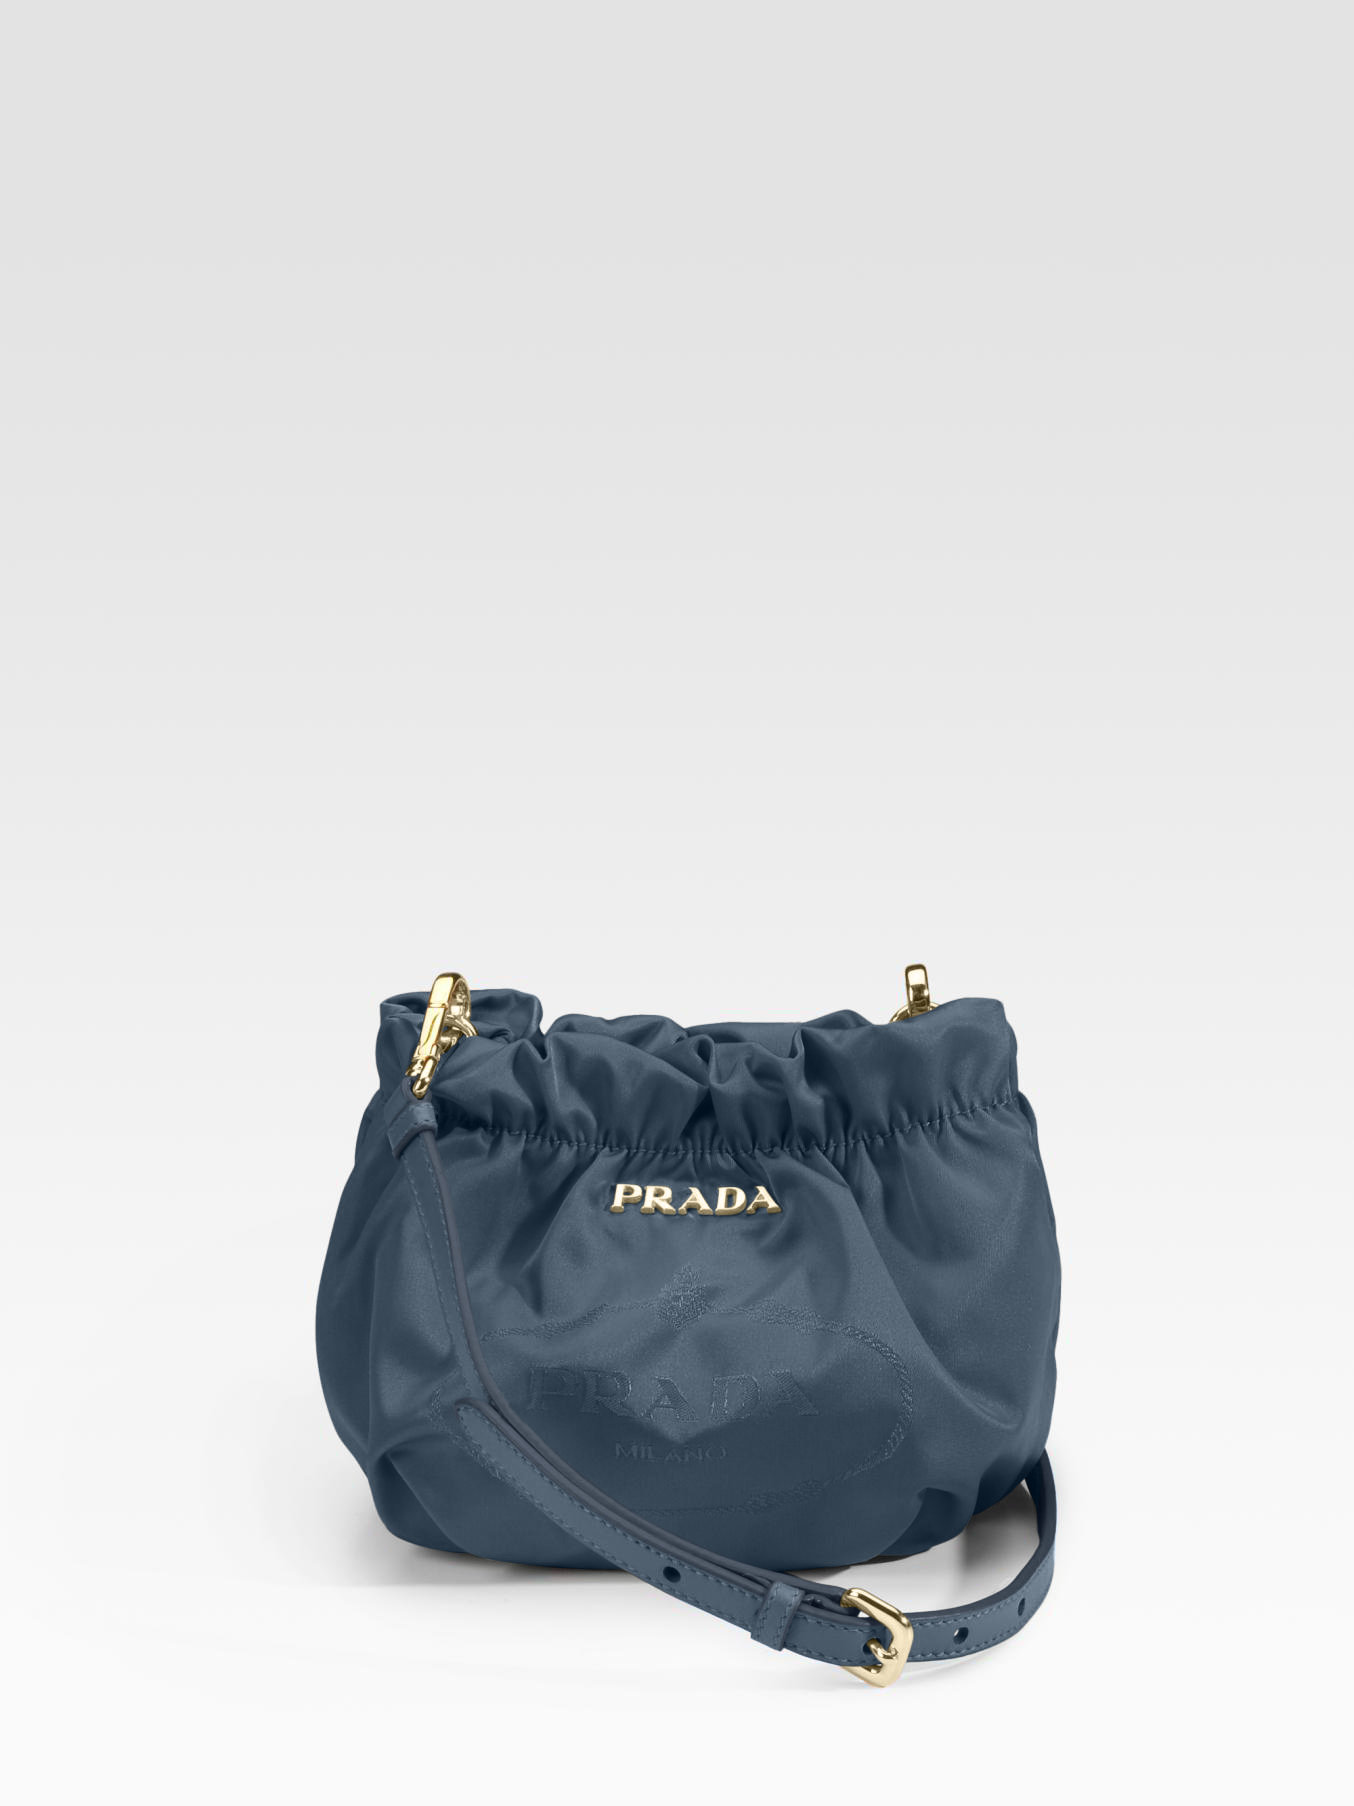 Prada Nylon Jacquard Cross-Body Bag in Blue (denim) | Lyst  